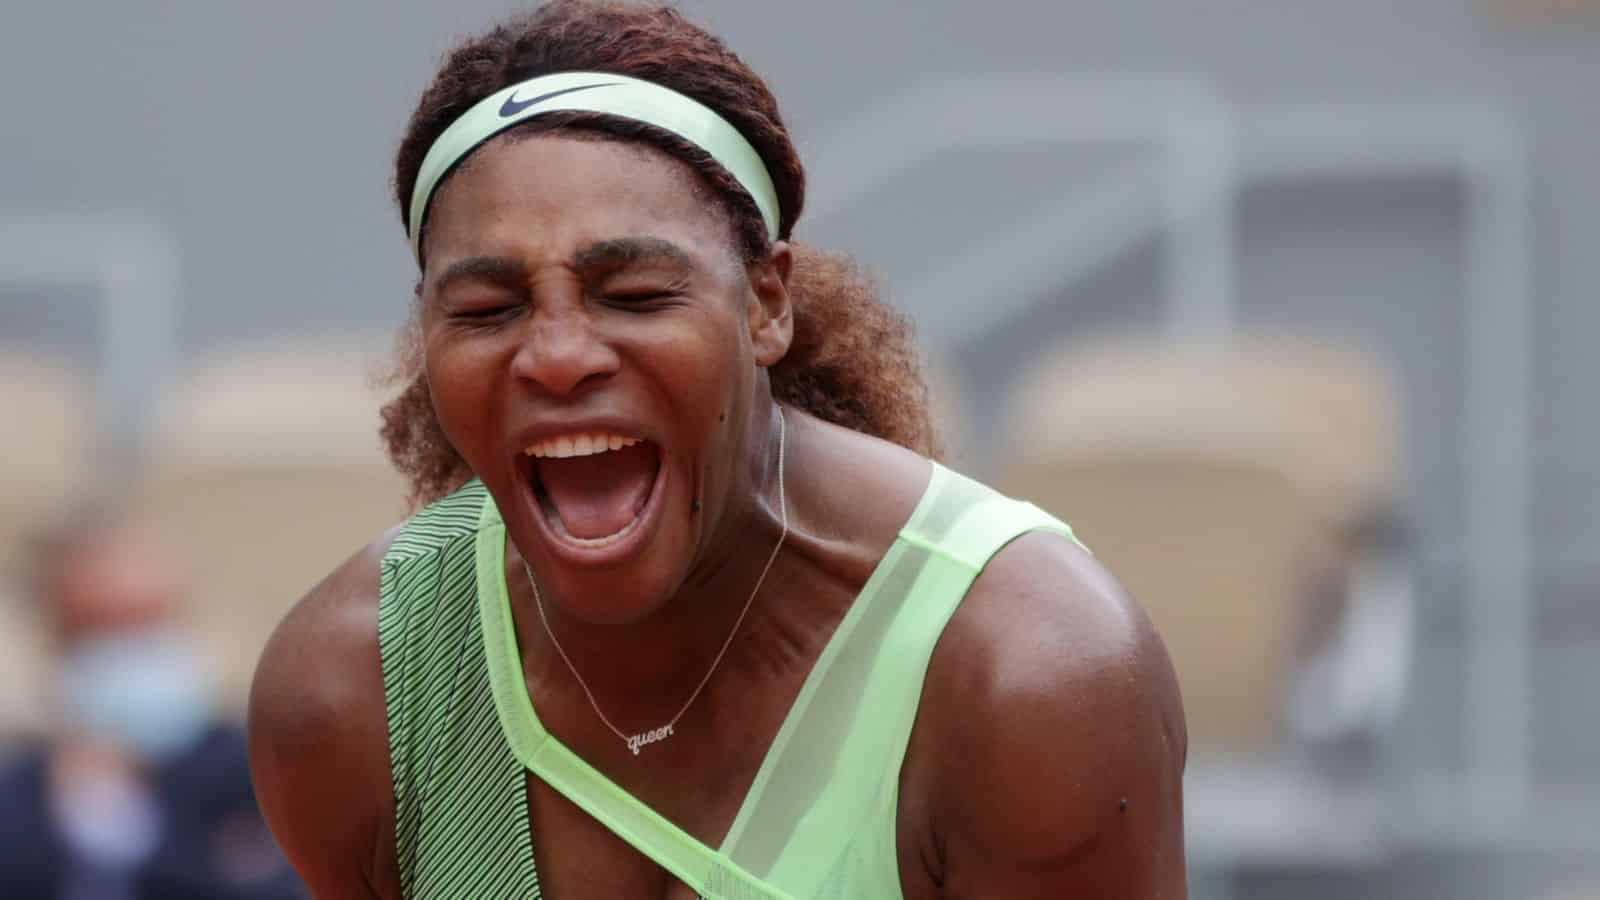 Abierto de Francia Serena Williams navega en Roland Garros despues